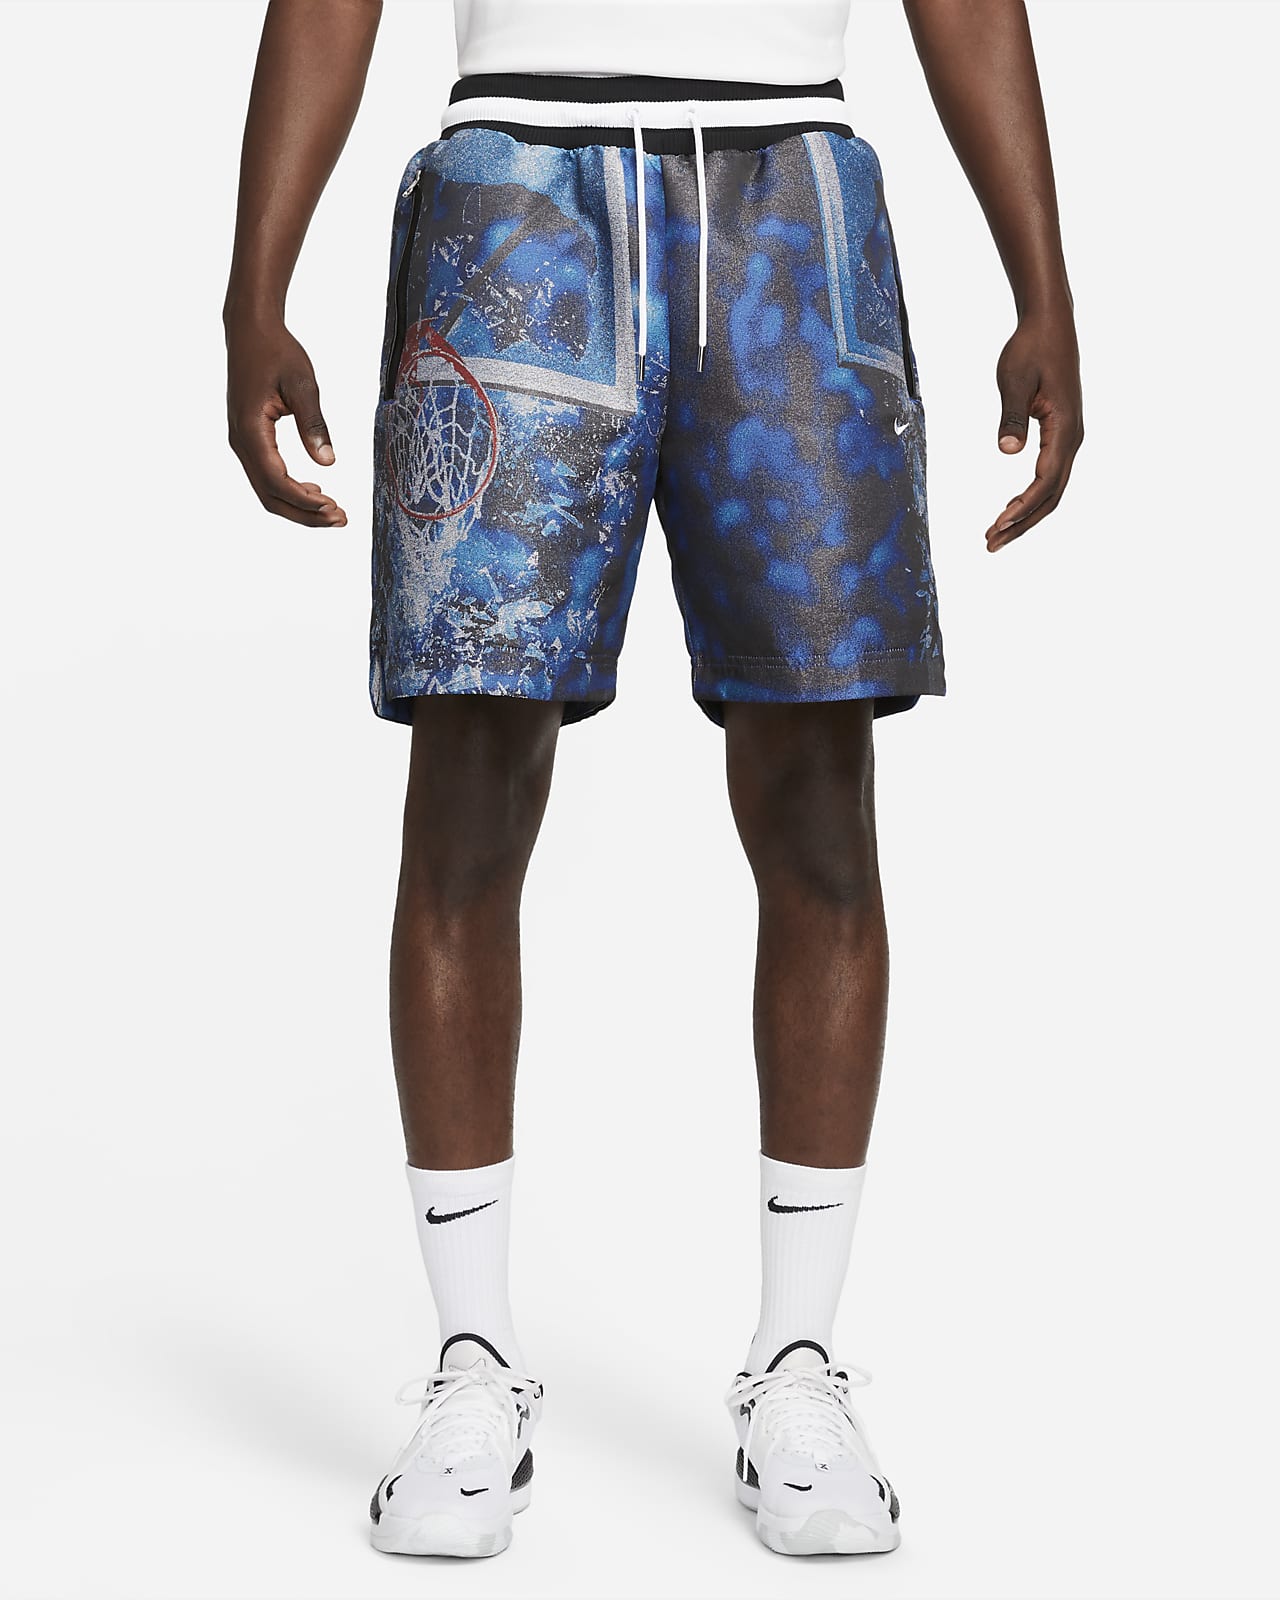 Pánské 20cm basketbalové kraťasy Nike DNA